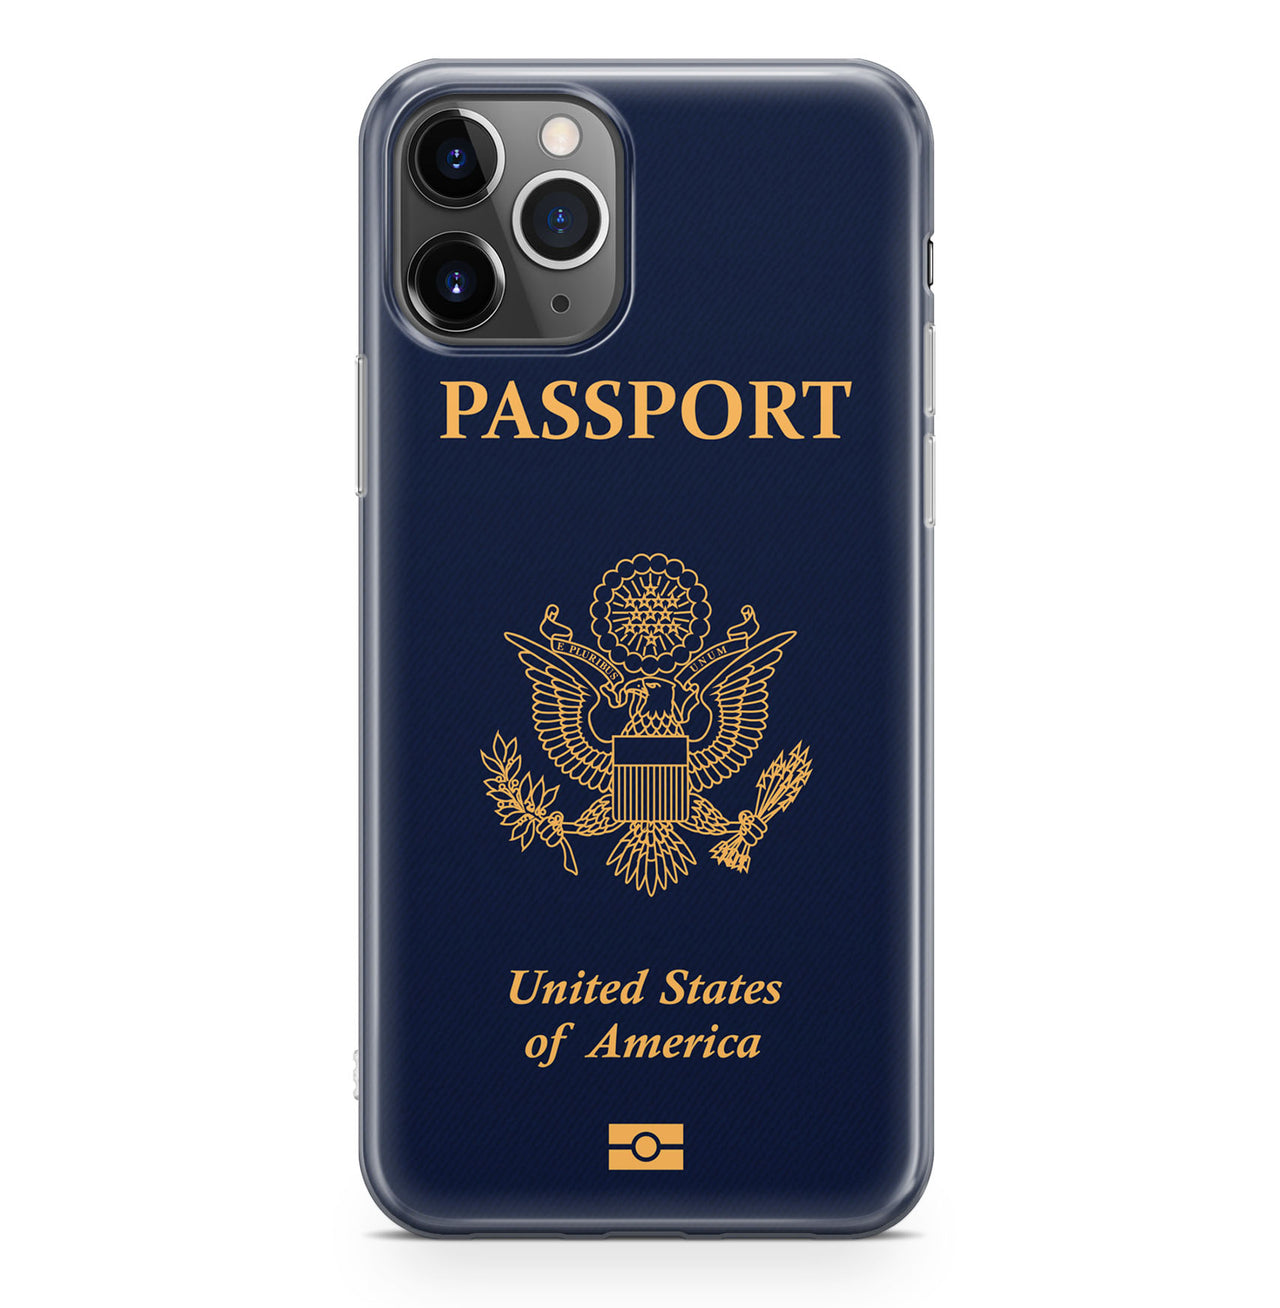 USA Passport Designed iPhone Cases